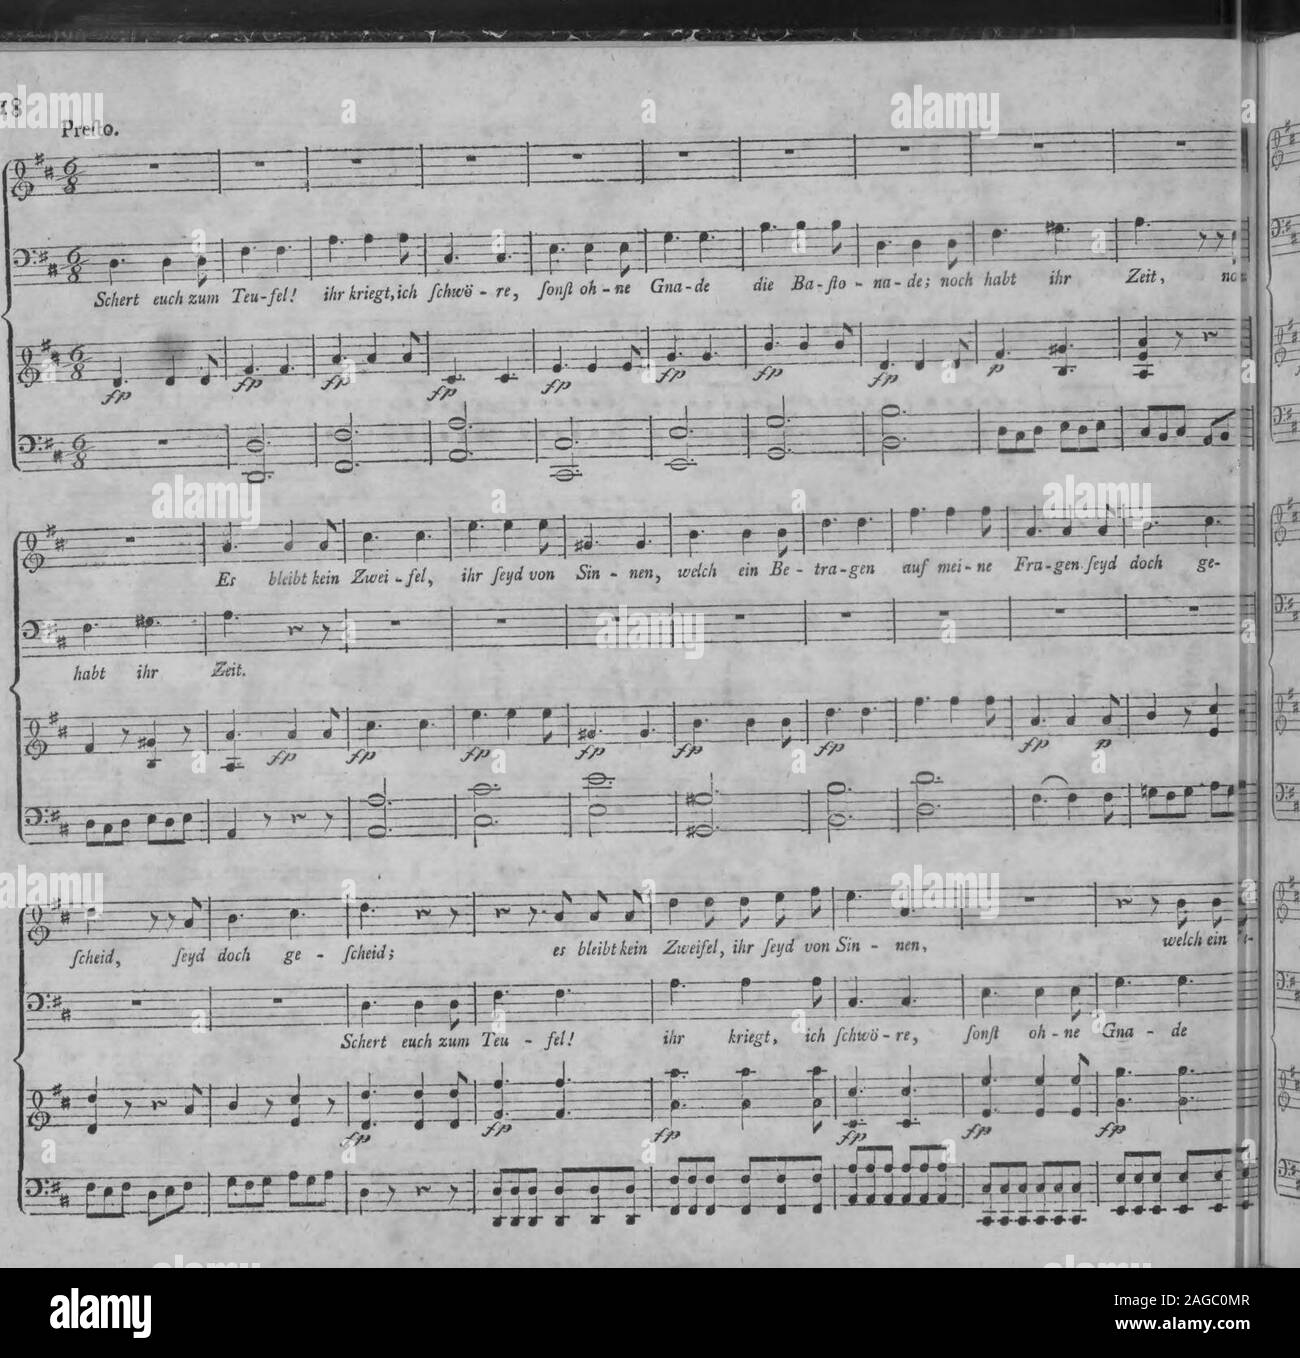 . Die Entfuhrung aus dem Serail : ein komisches Singspiel in drey Aufzugen (1796). Mozart, Entführ, aus dem Serail.. Stock Photo